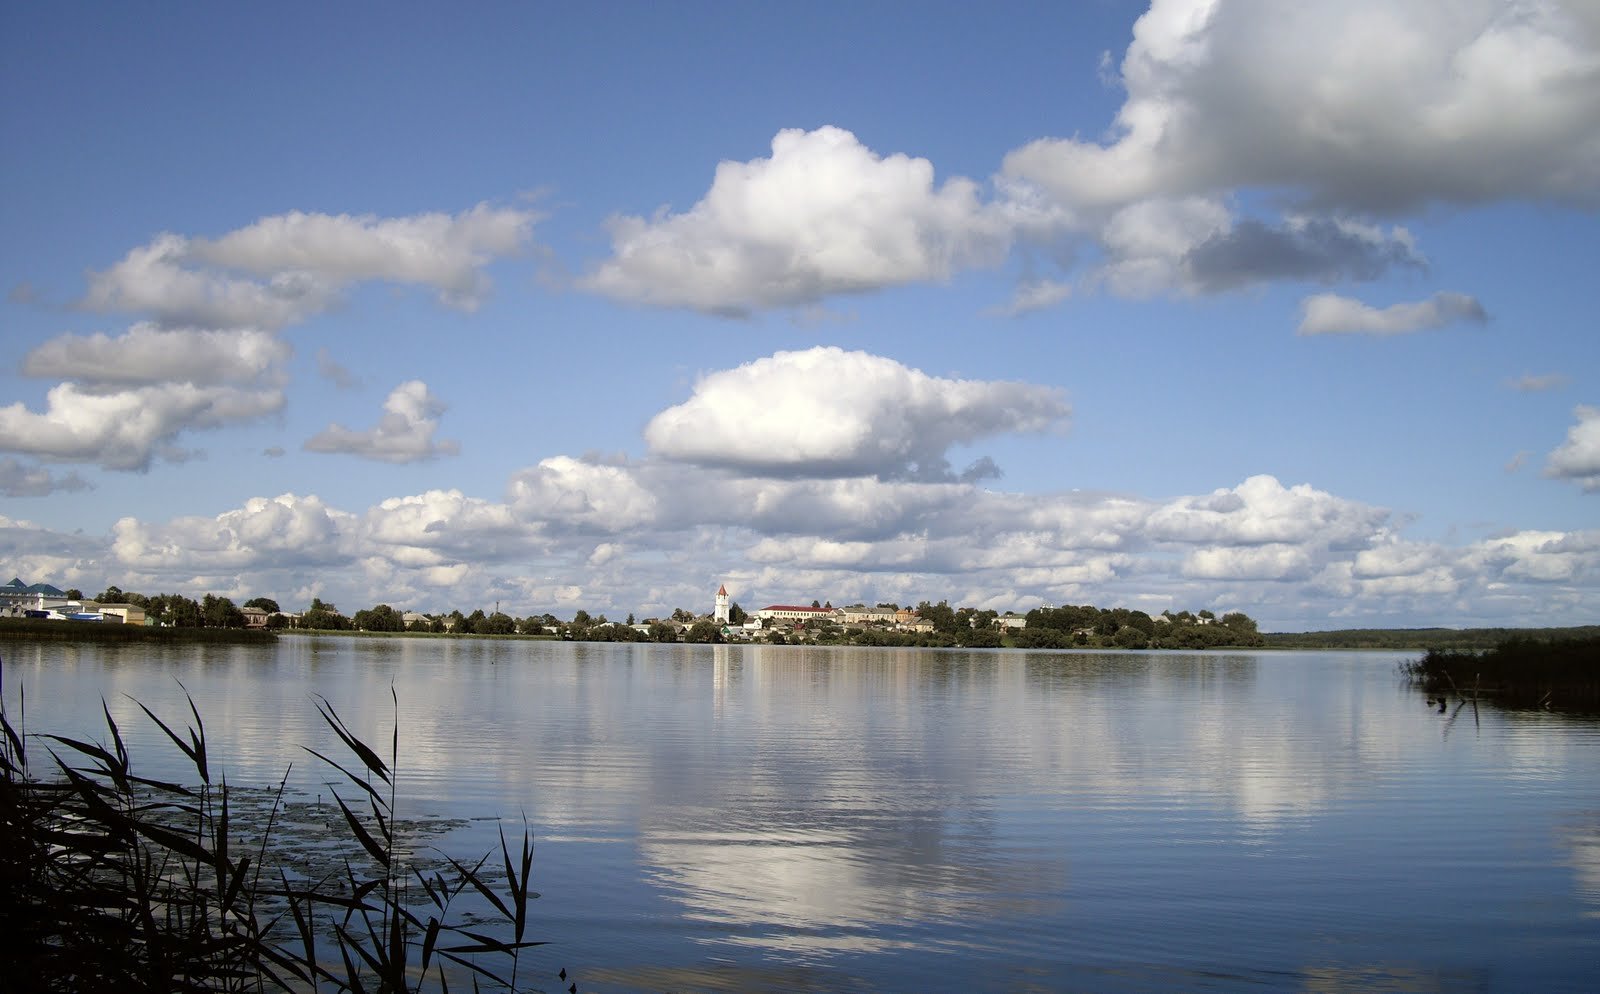 Озеро Себежское Псковской области